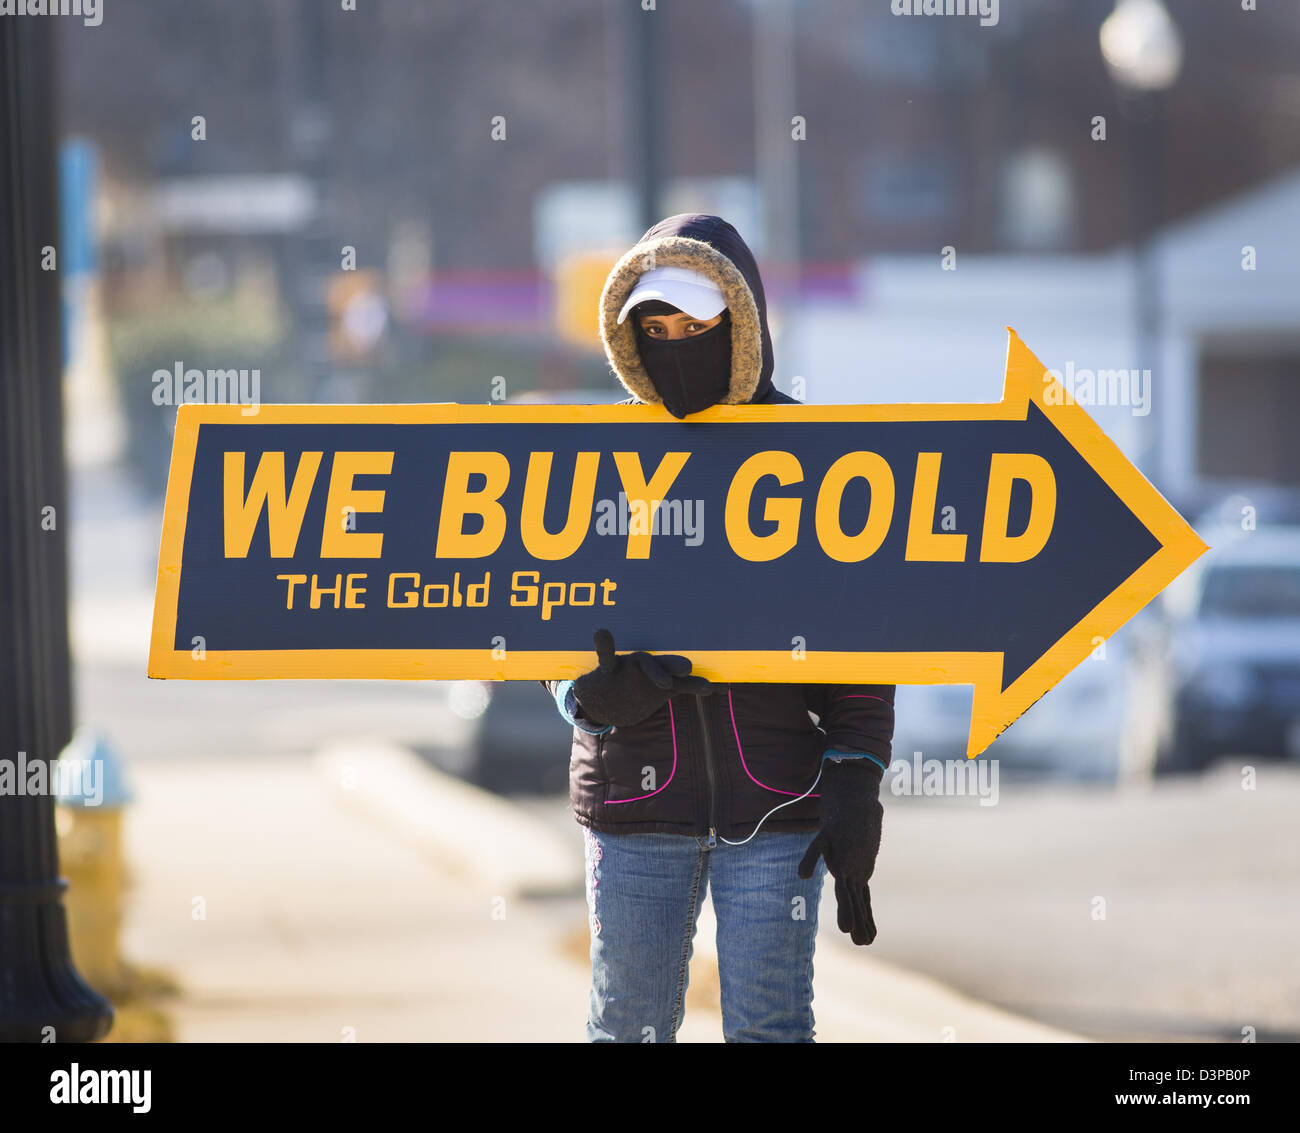 ARLINGTON, VIRGINIA, USA - Femme nous acheter de l'or signer sur trottoir pour attirer les clients. Banque D'Images